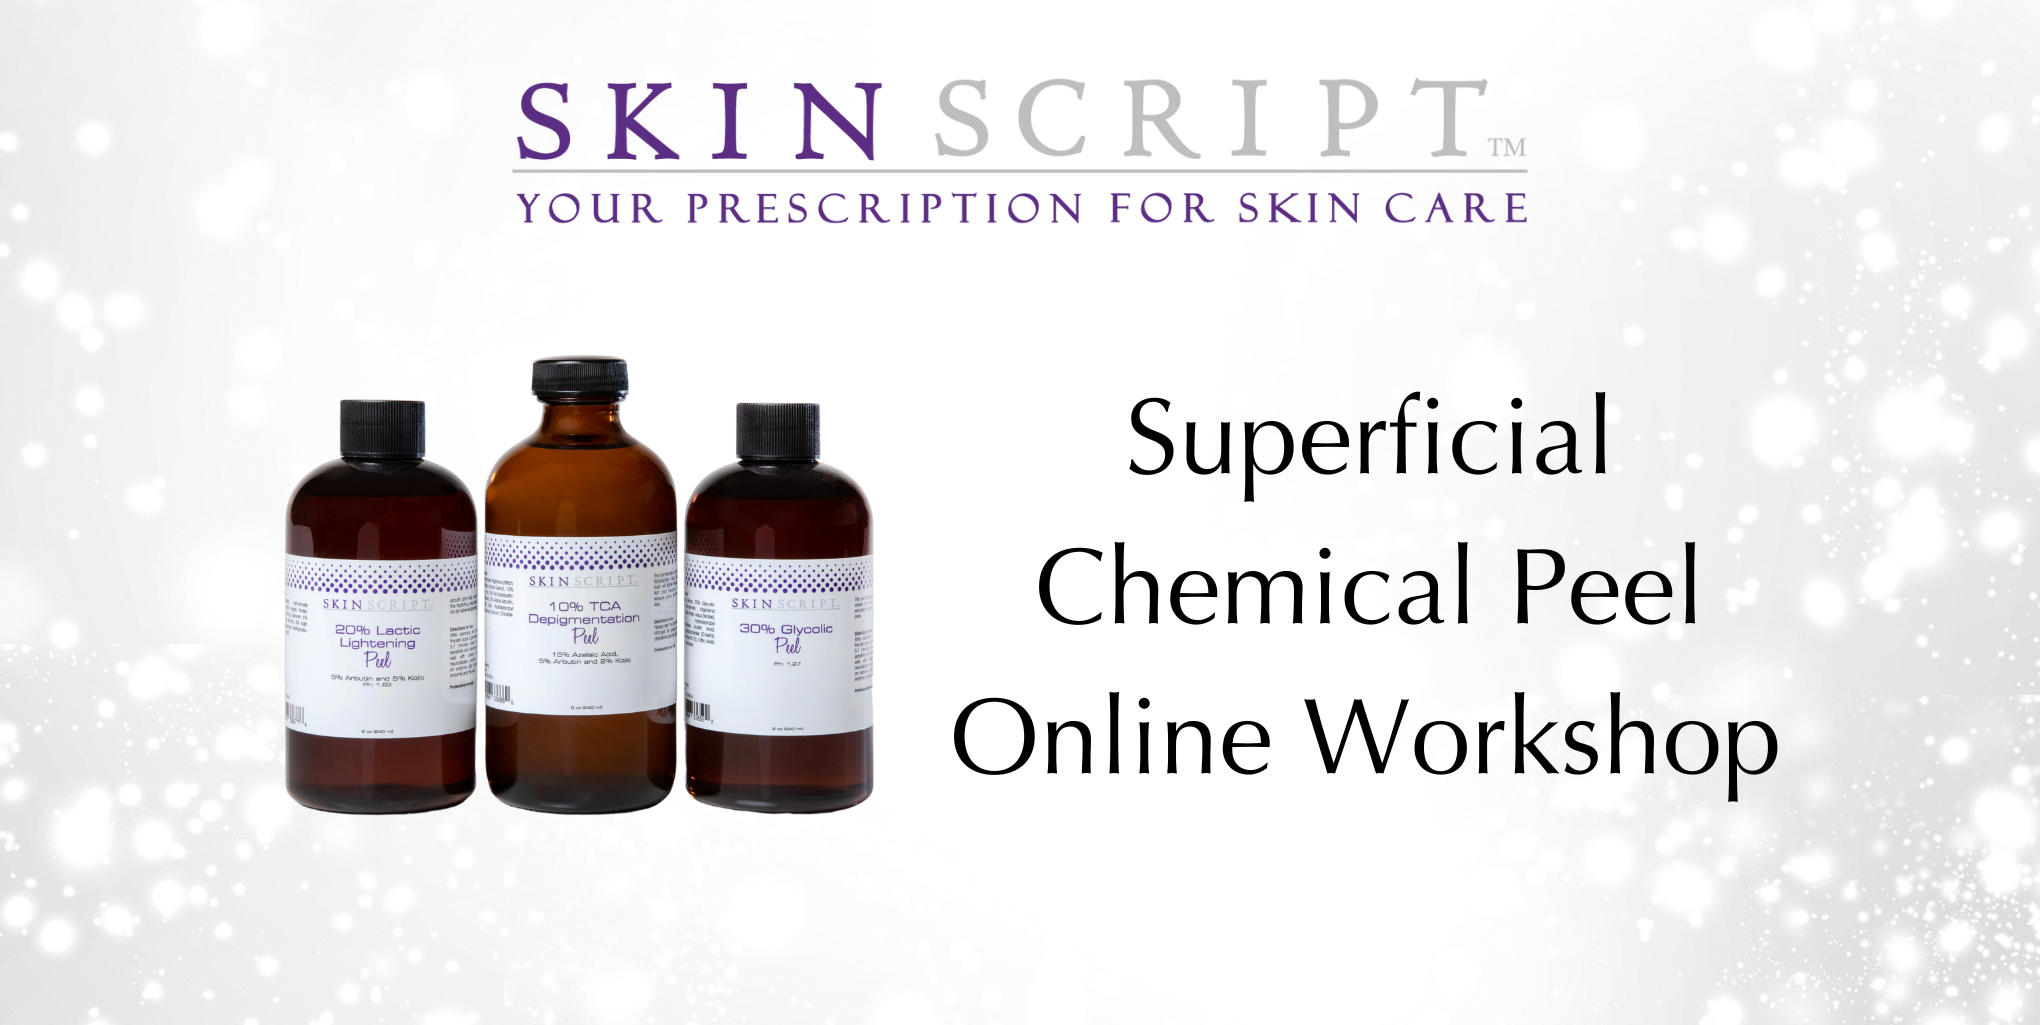 superficial chemical peel online workshop hero image